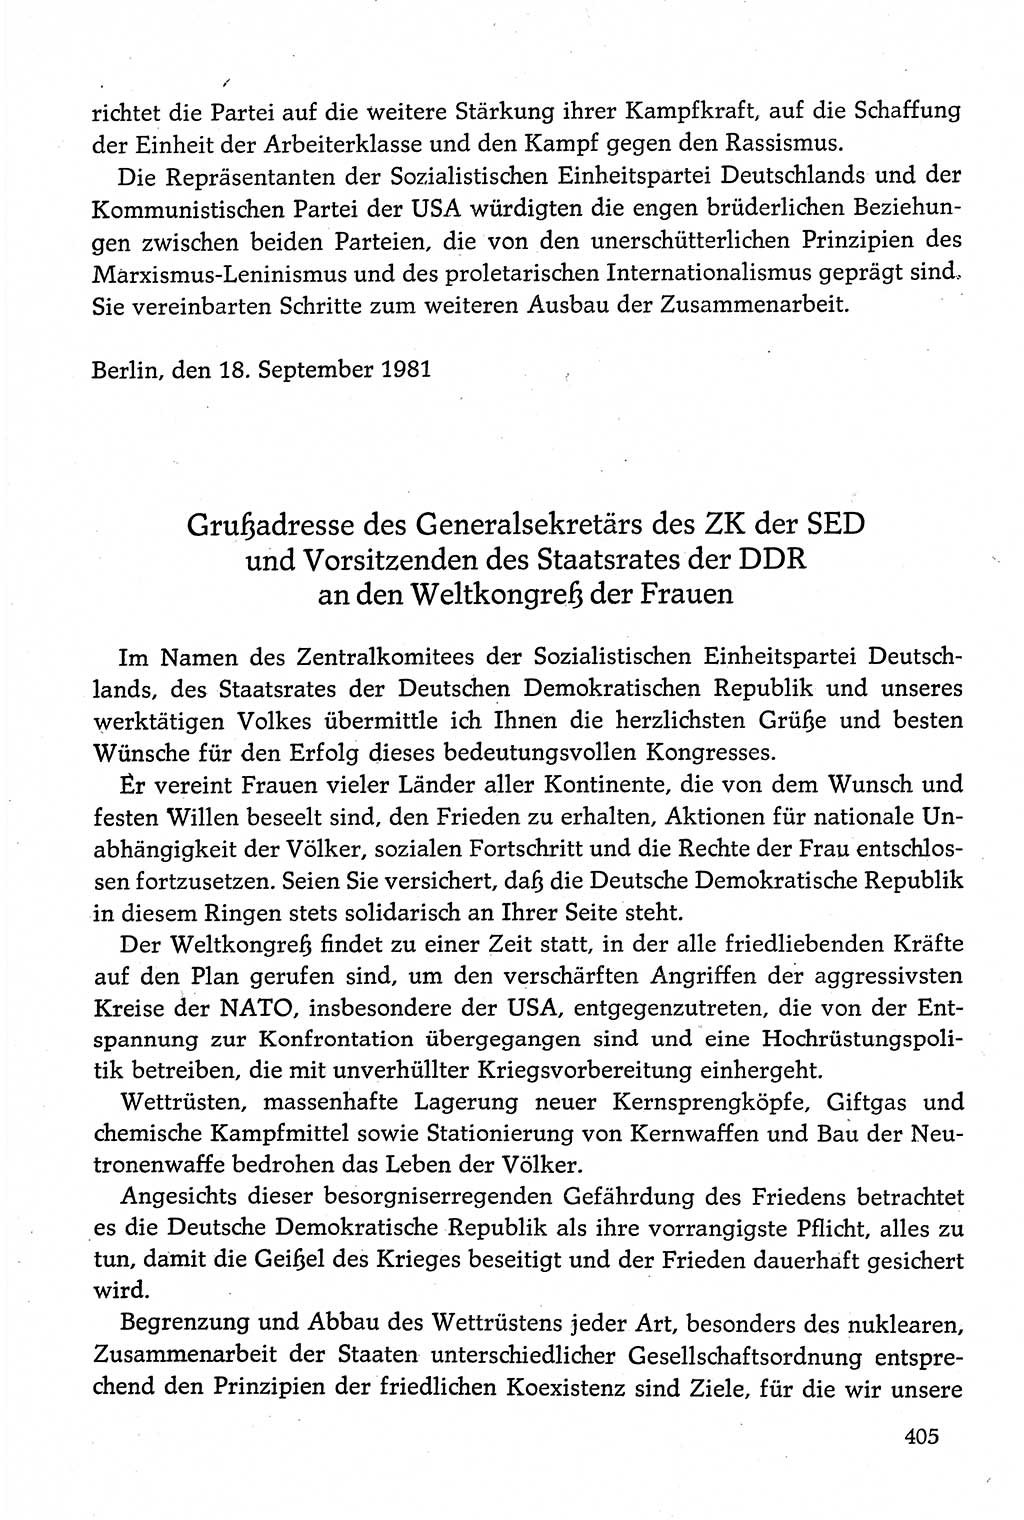 Dokumente der Sozialistischen Einheitspartei Deutschlands (SED) [Deutsche Demokratische Republik (DDR)] 1980-1981, Seite 405 (Dok. SED DDR 1980-1981, S. 405)